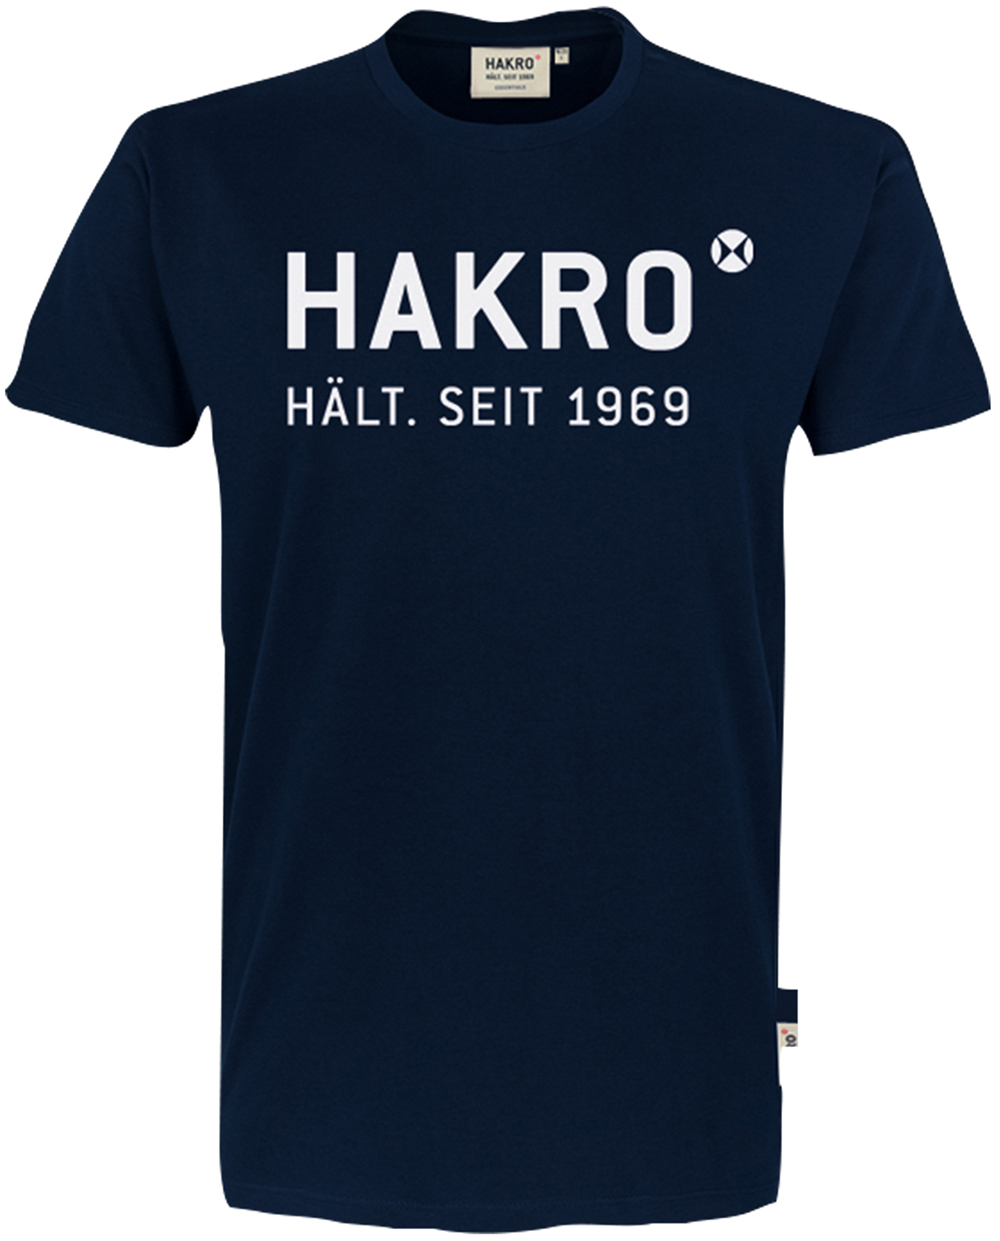 Hakro T-Shirt mit Logodruck 1969